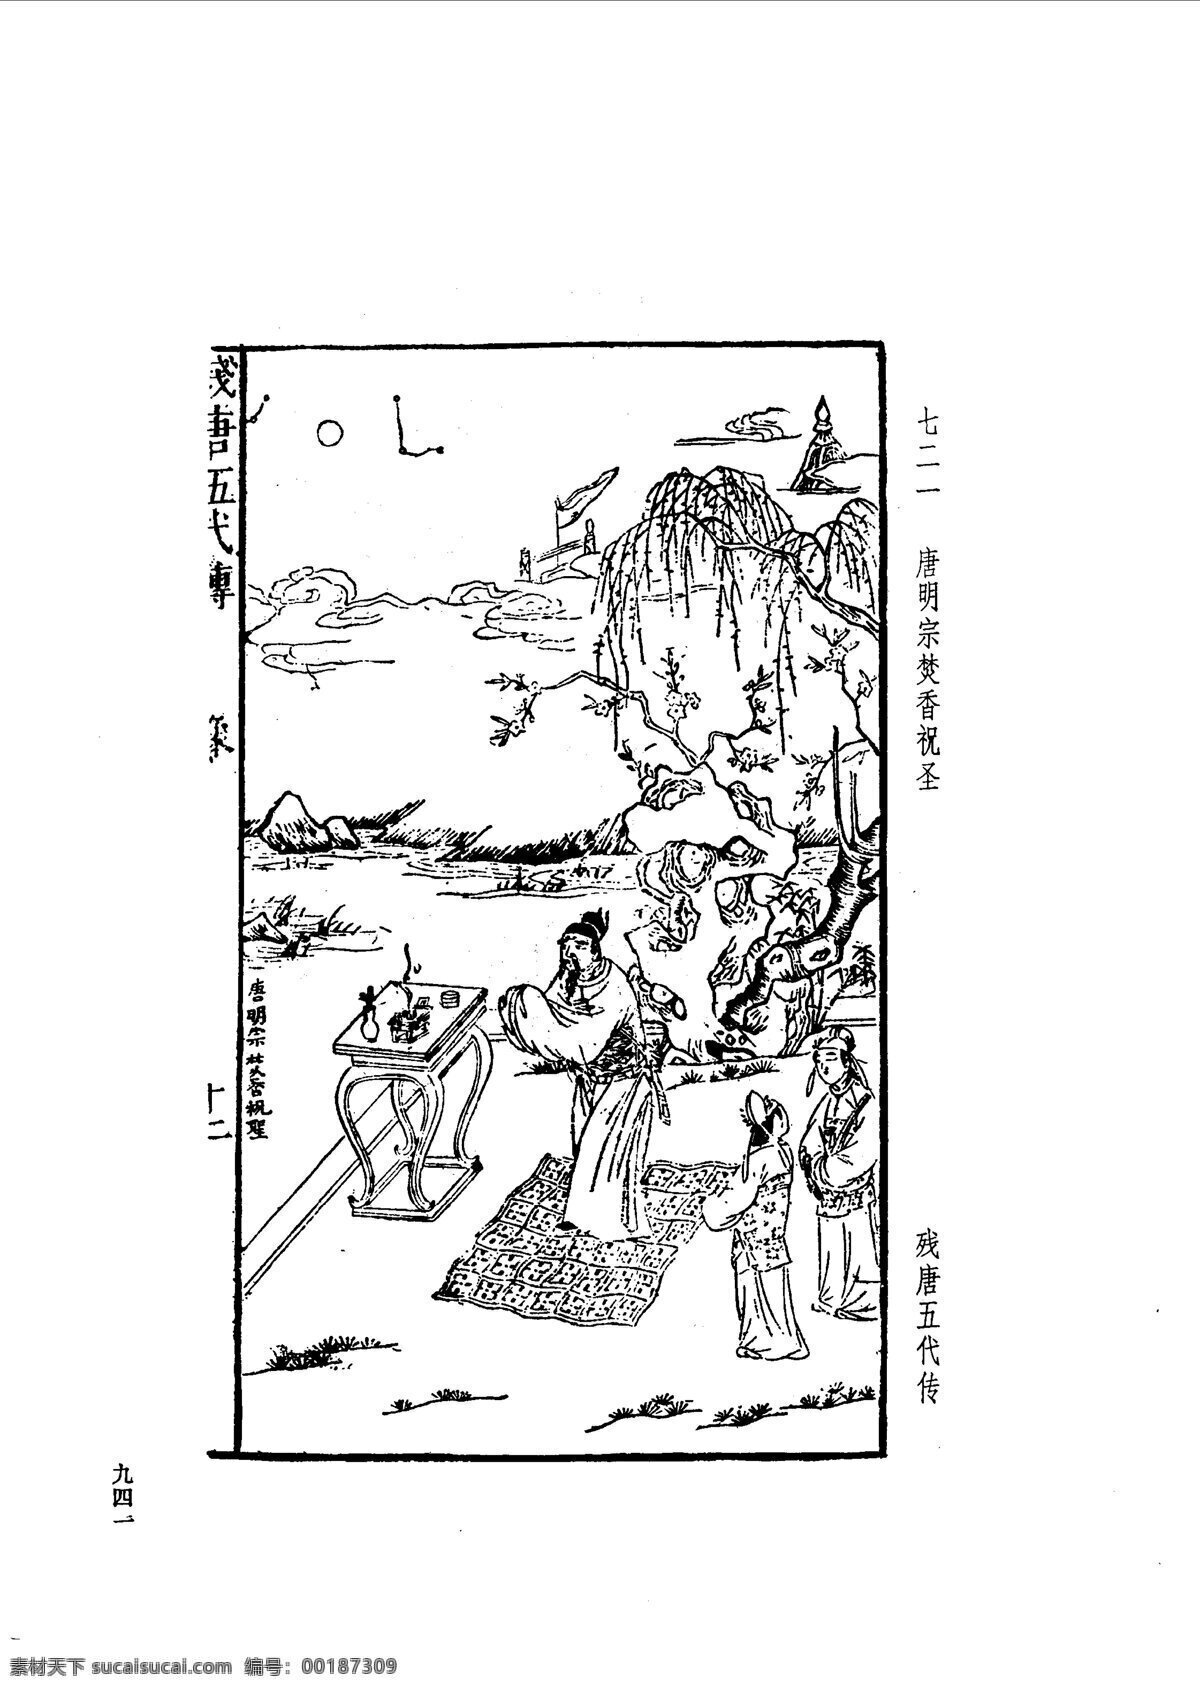 中国 古典文学 版画 选集 上 下册0969 设计素材 版画世界 书画美术 白色